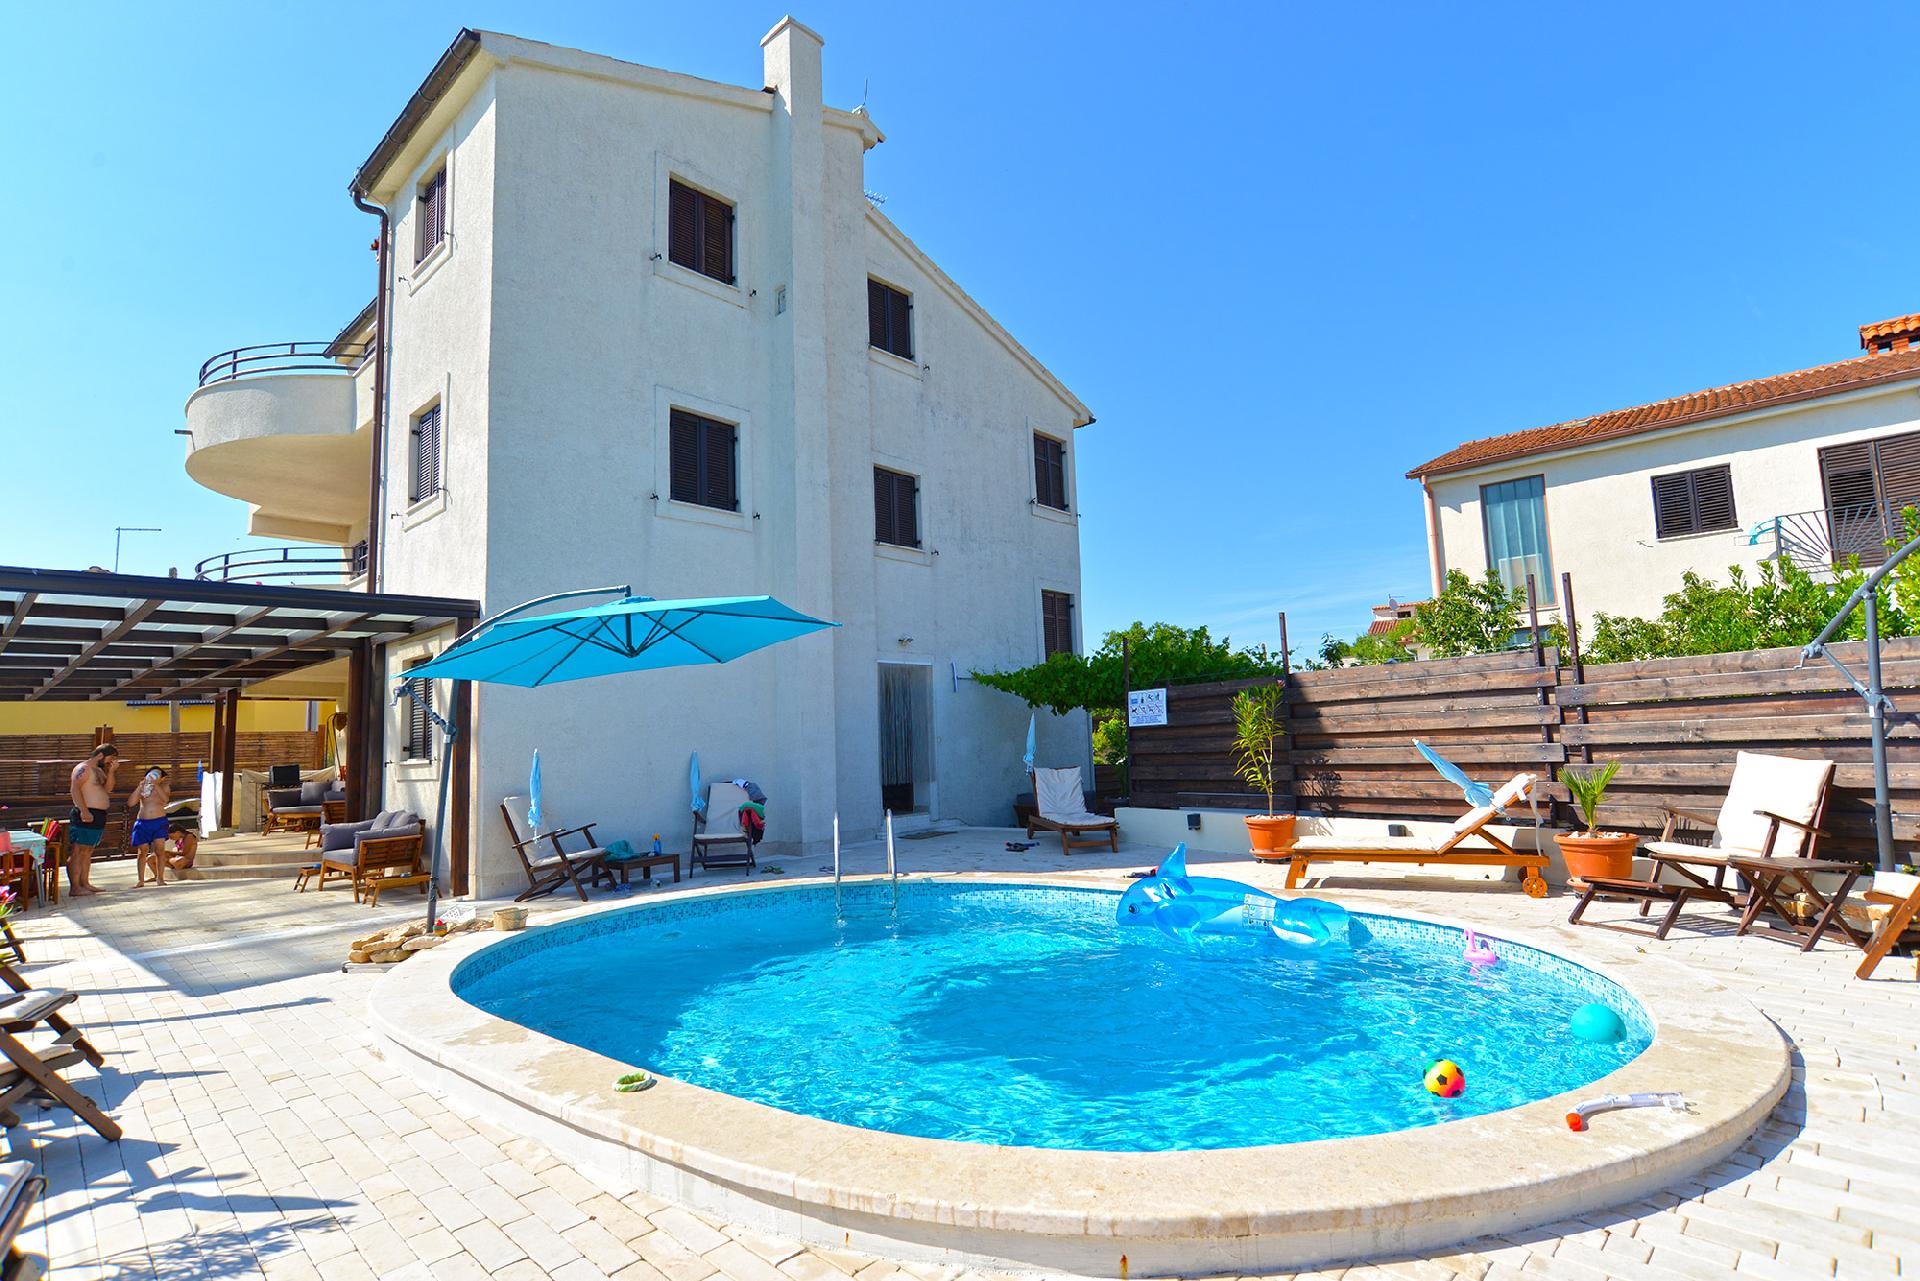 Ferienwohnung für 2 Personen ca. 41 m² i  in Kroatien